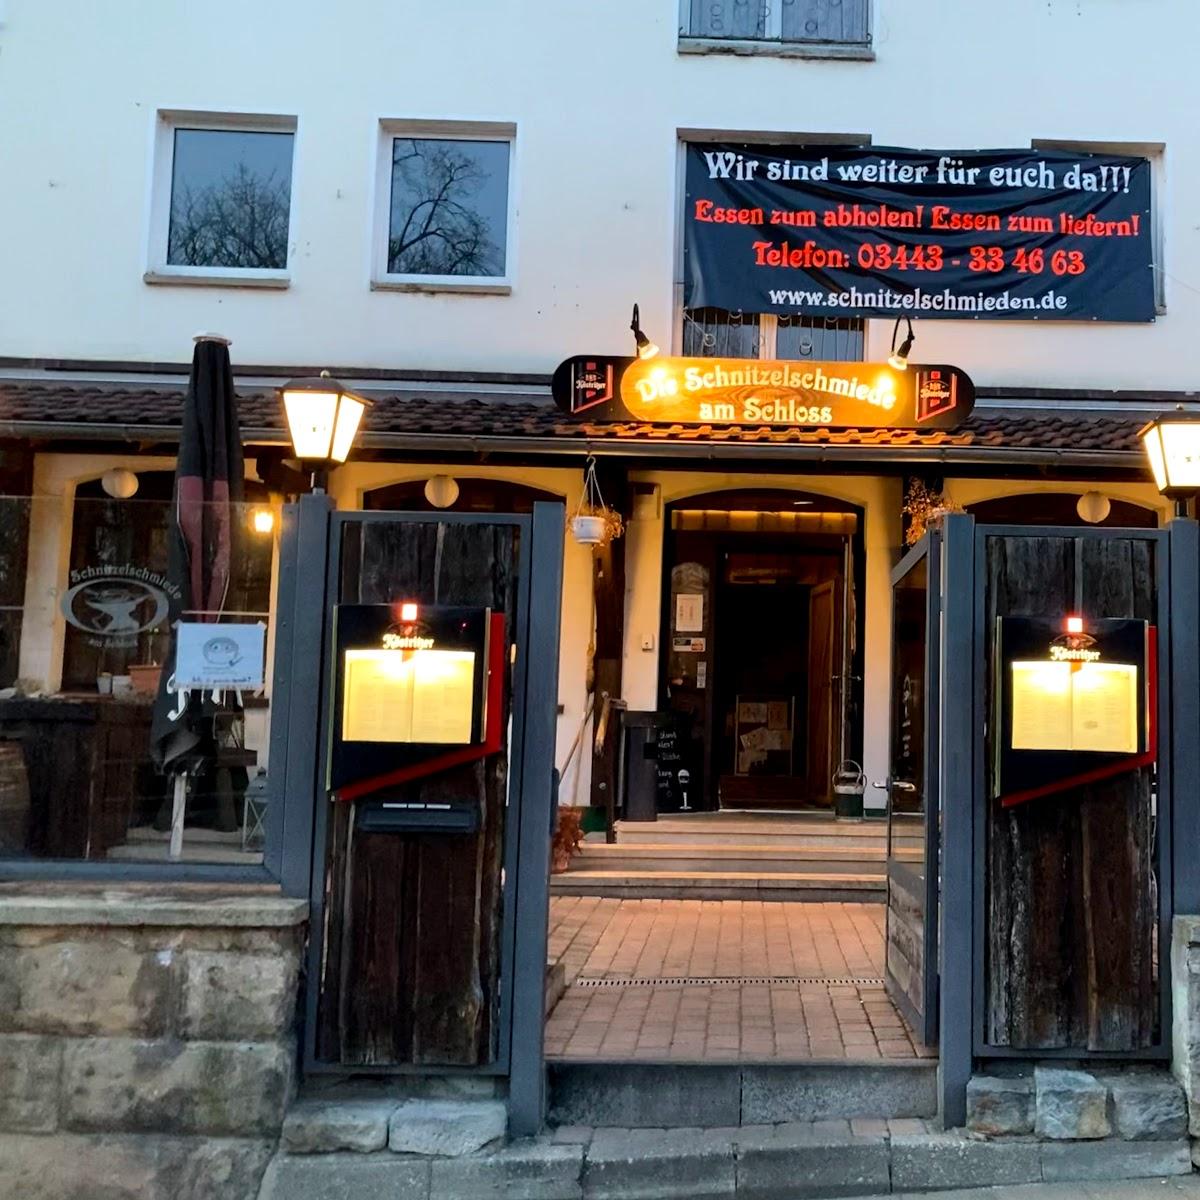 Restaurant "Schnitzelschmiede am Schloss" in Weißenfels